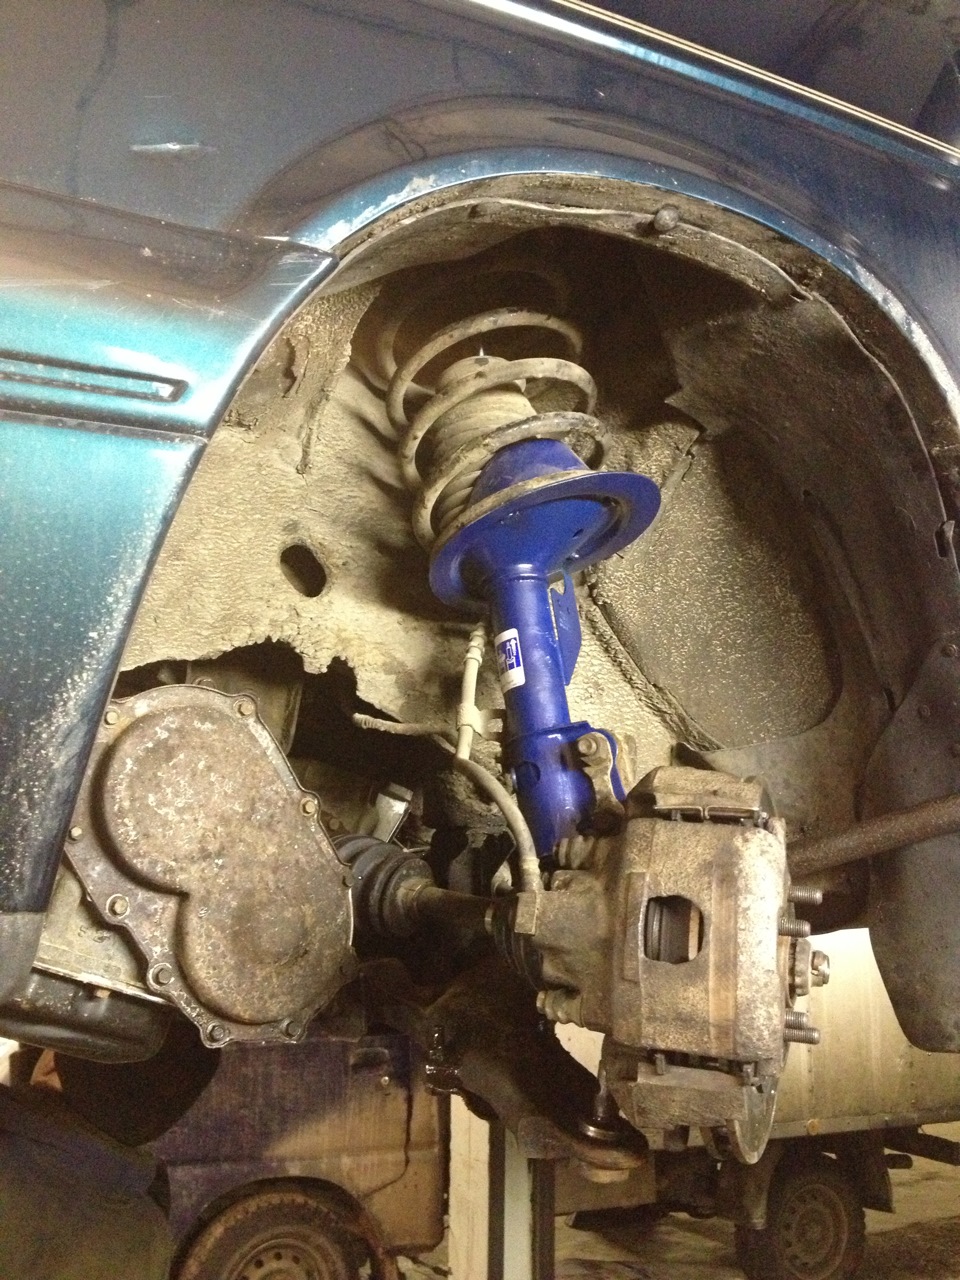 How do you repair a caravan suspension?